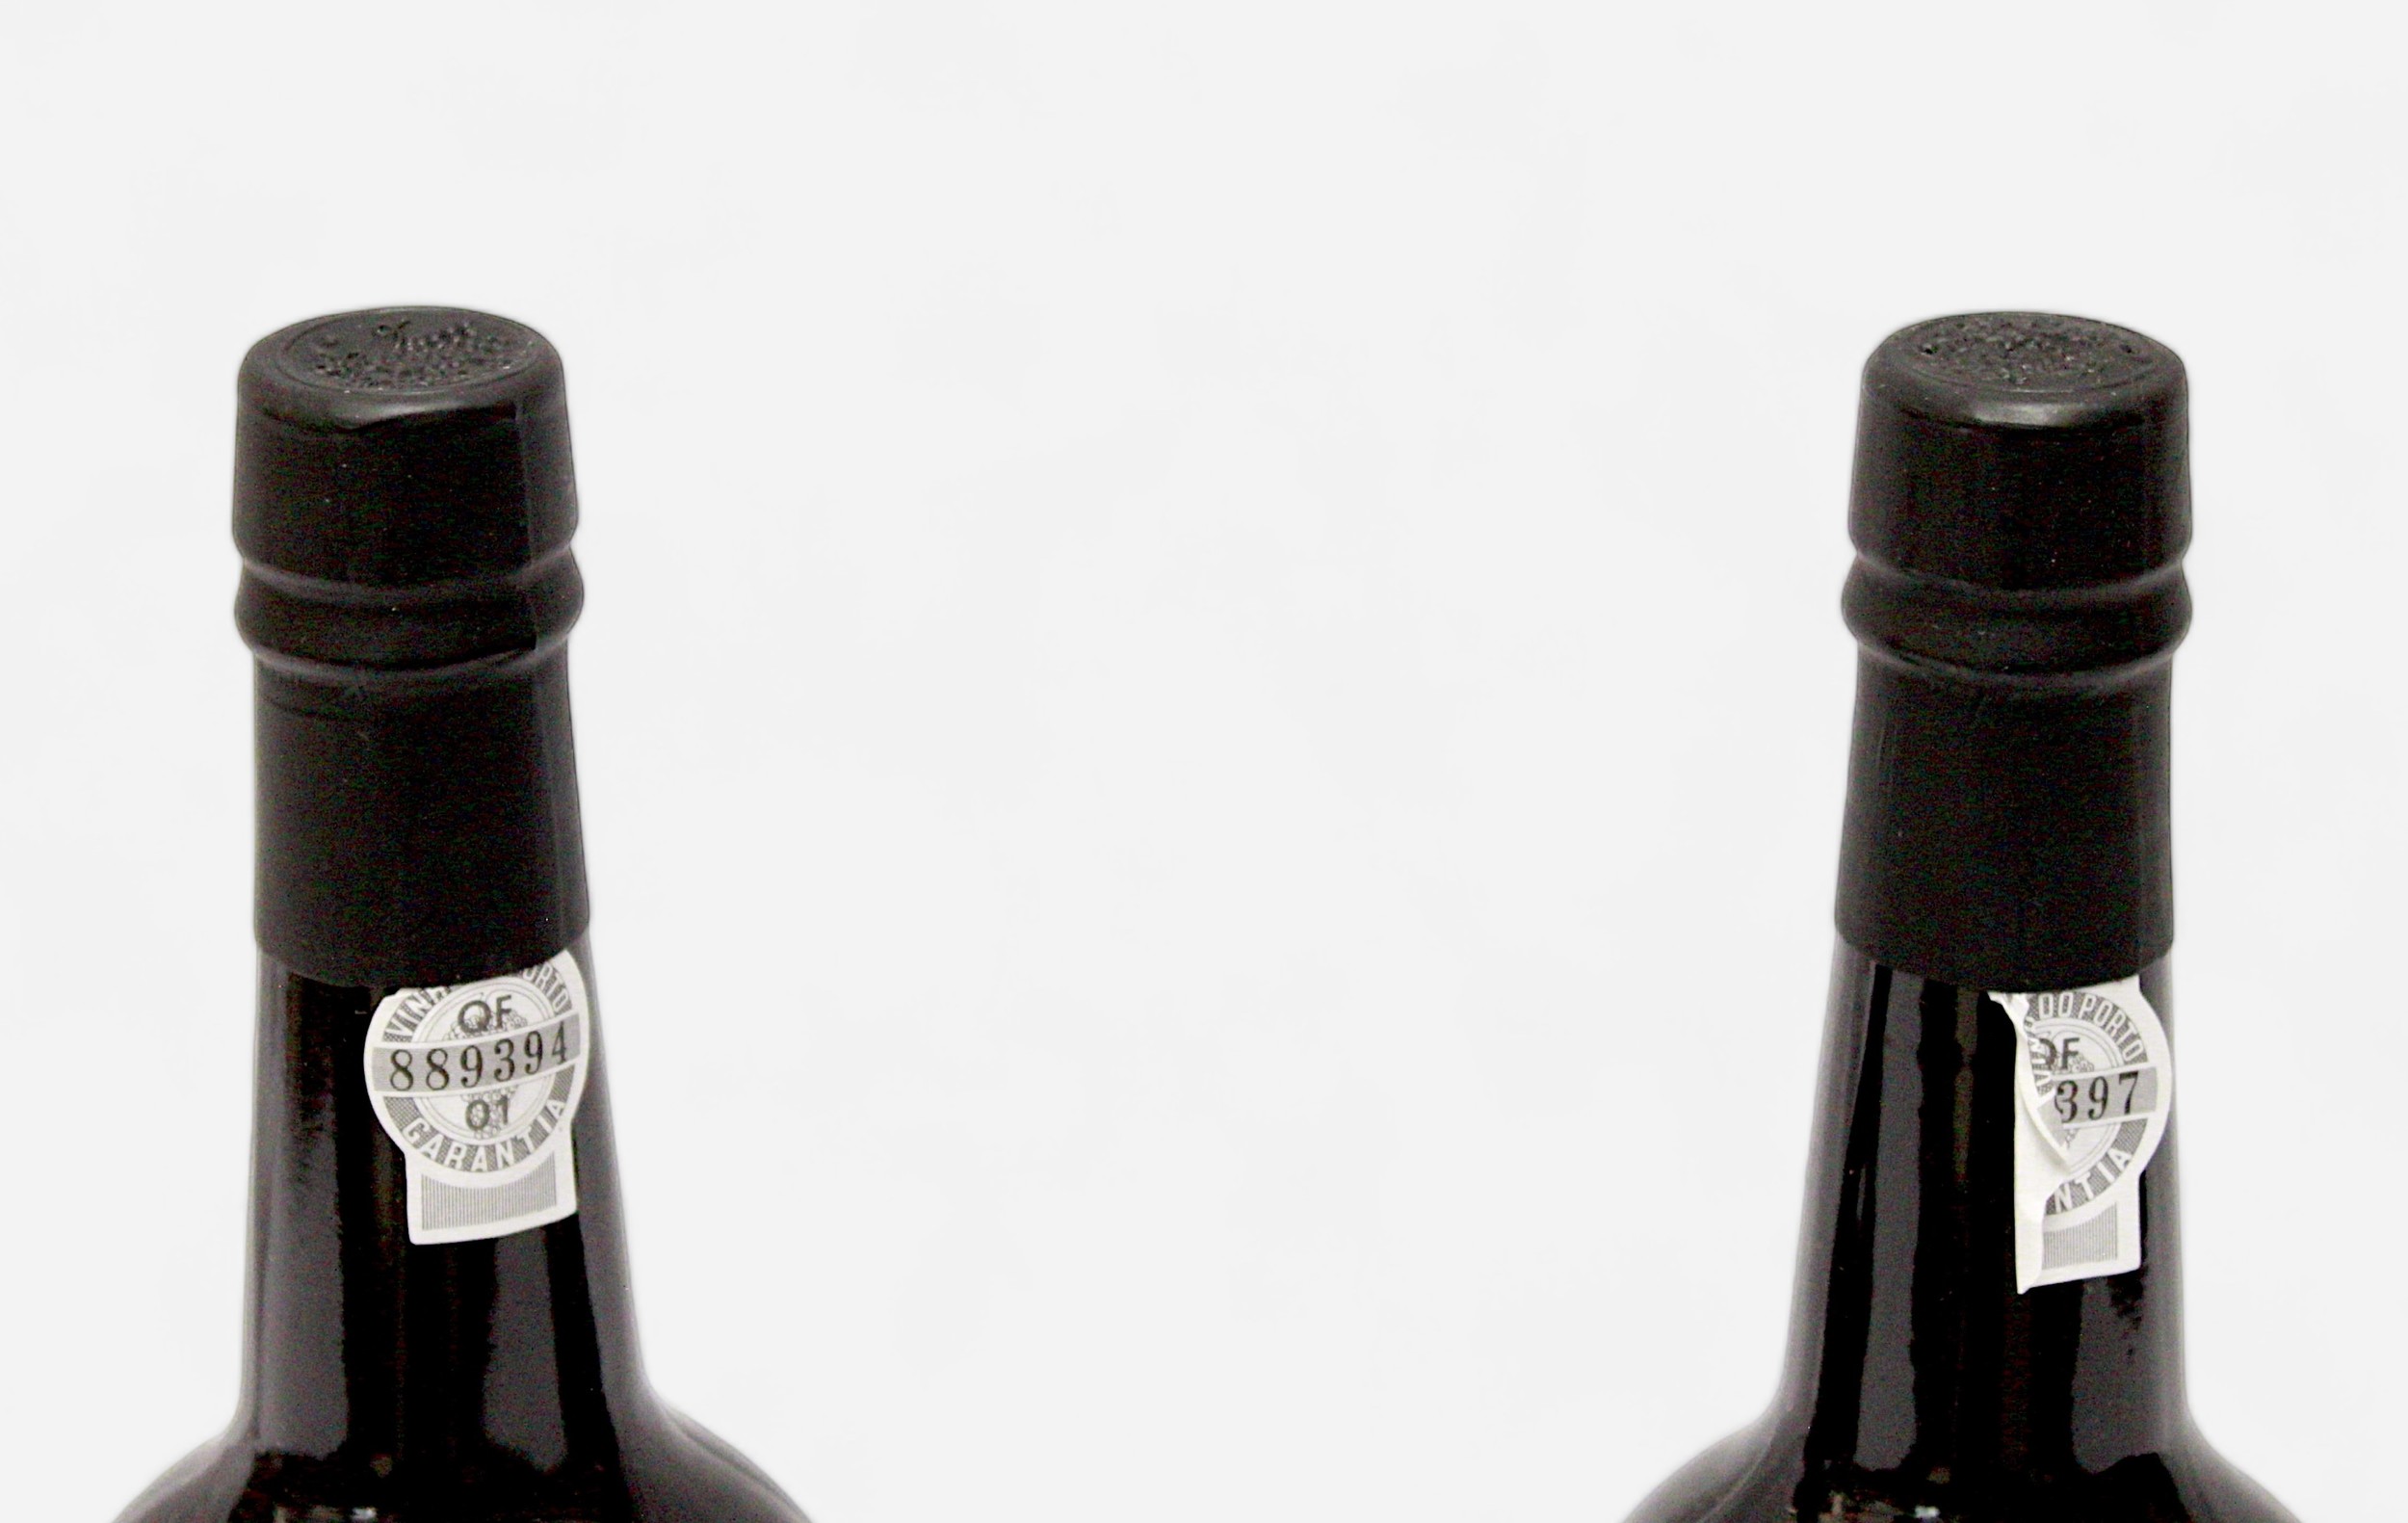 Nine bottles of Fonseca Vintage port, 1992 vintage, 20.5% vol, 75cl bottles, all sealed with labels - Image 7 of 7